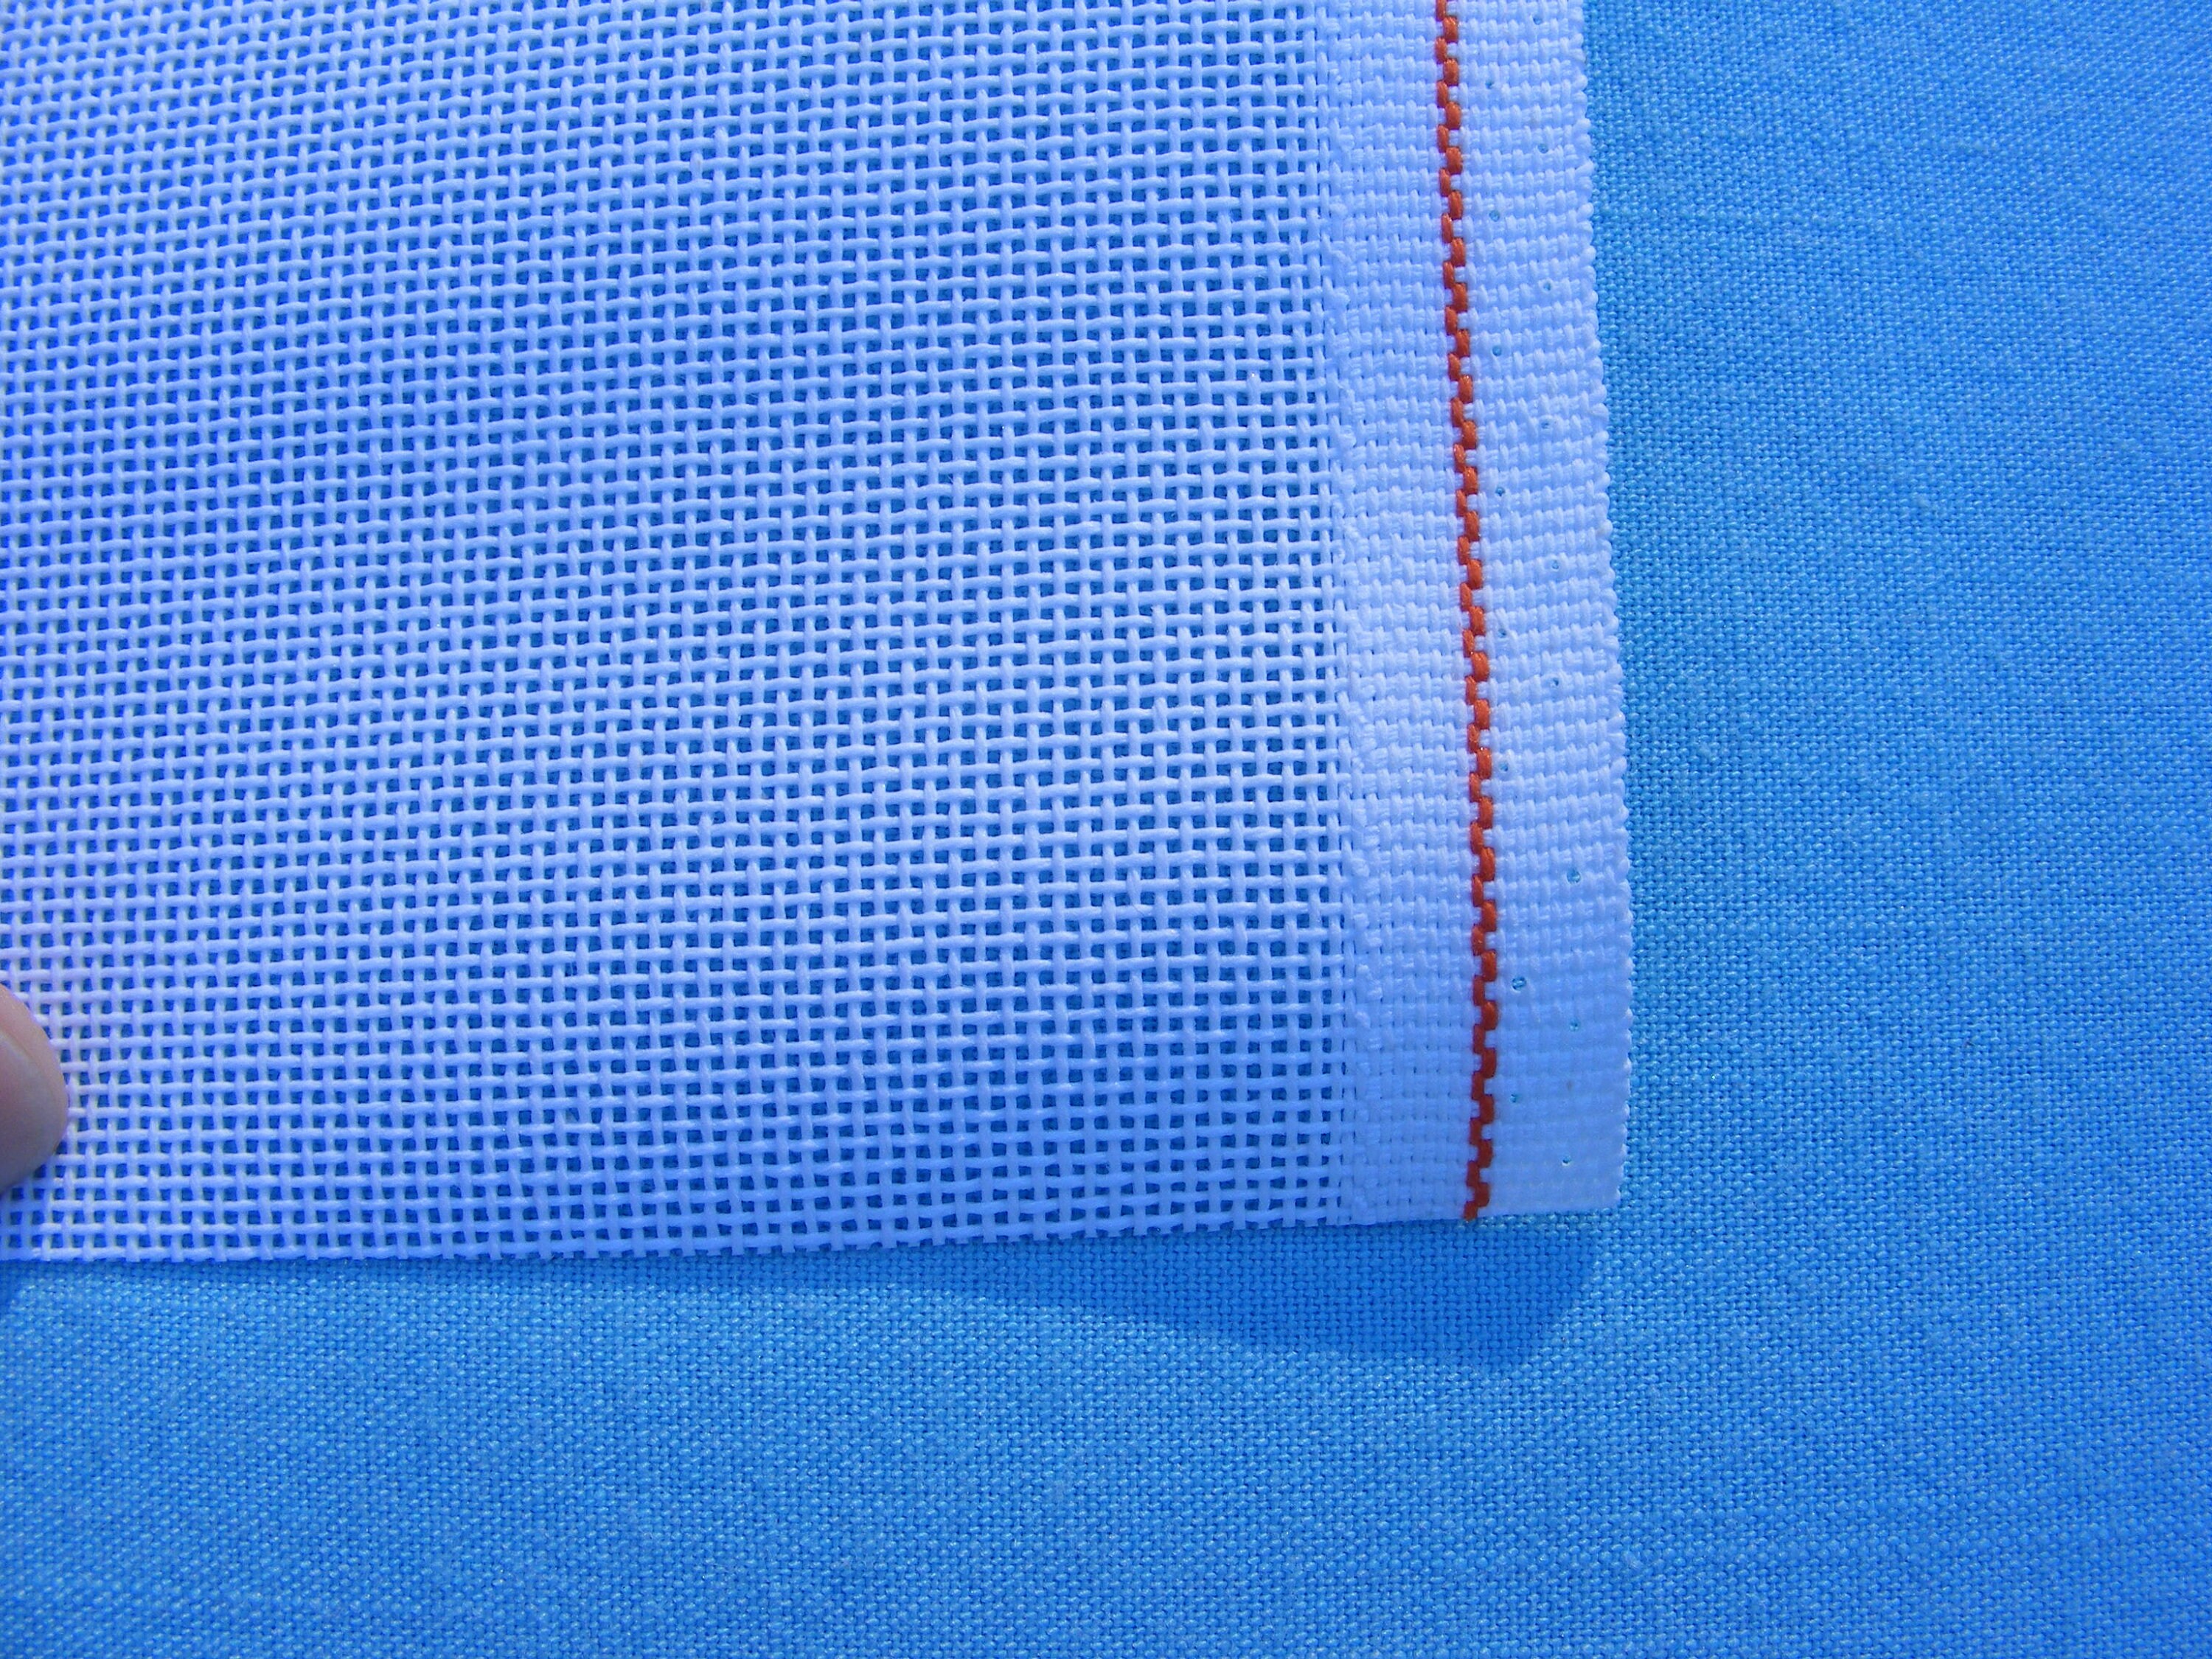 Mono Deluxe Needlepoint Canvas, SANTA FE SAGE, 18 mesh, 1 yard, Orange Line  by Zweigart